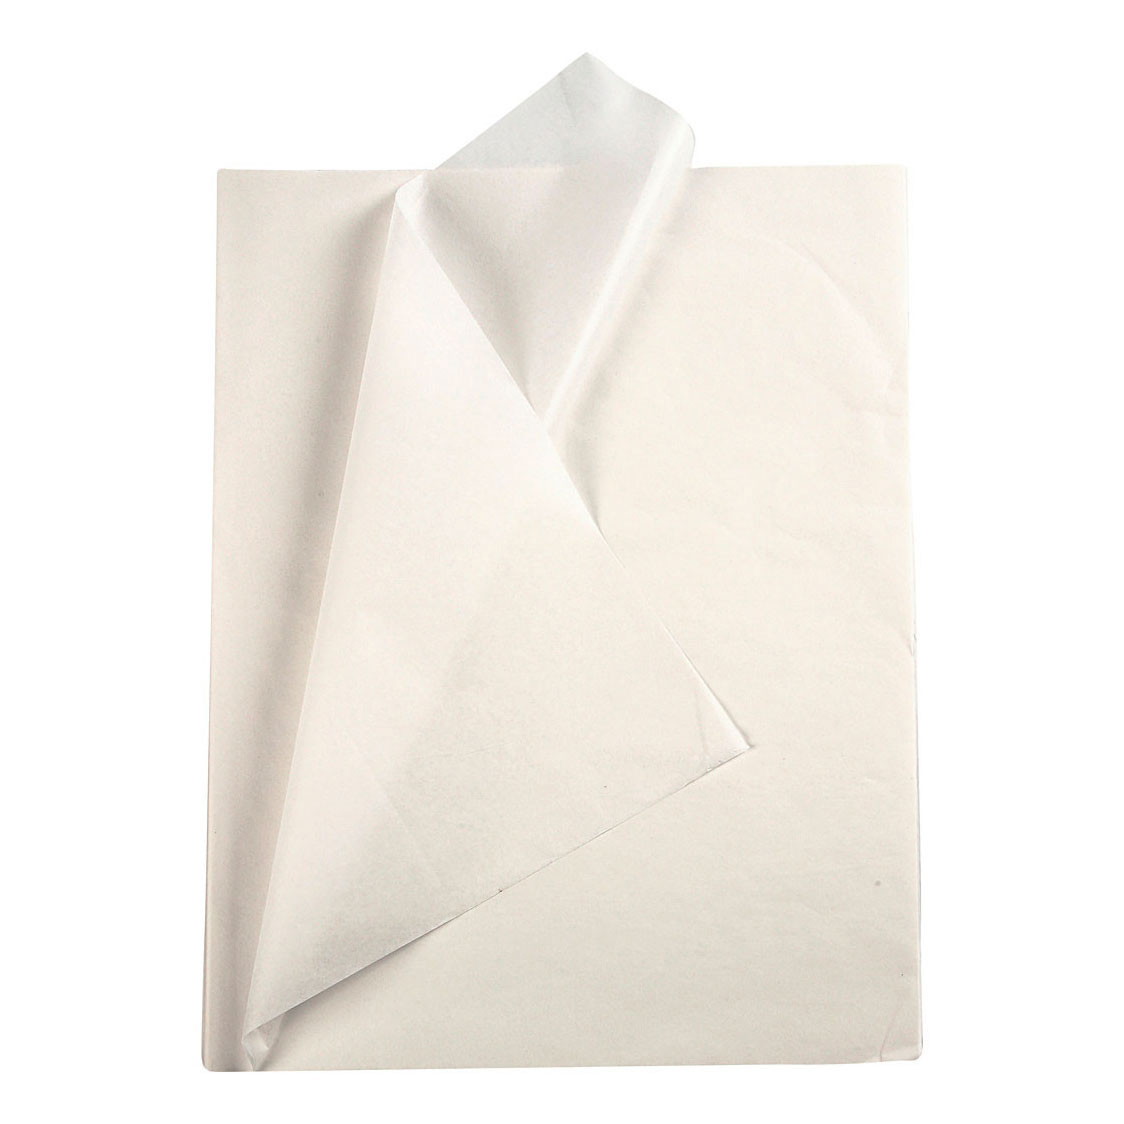 Papier de soie Blanc 10 Feuilles 14 gr, 50x70cm